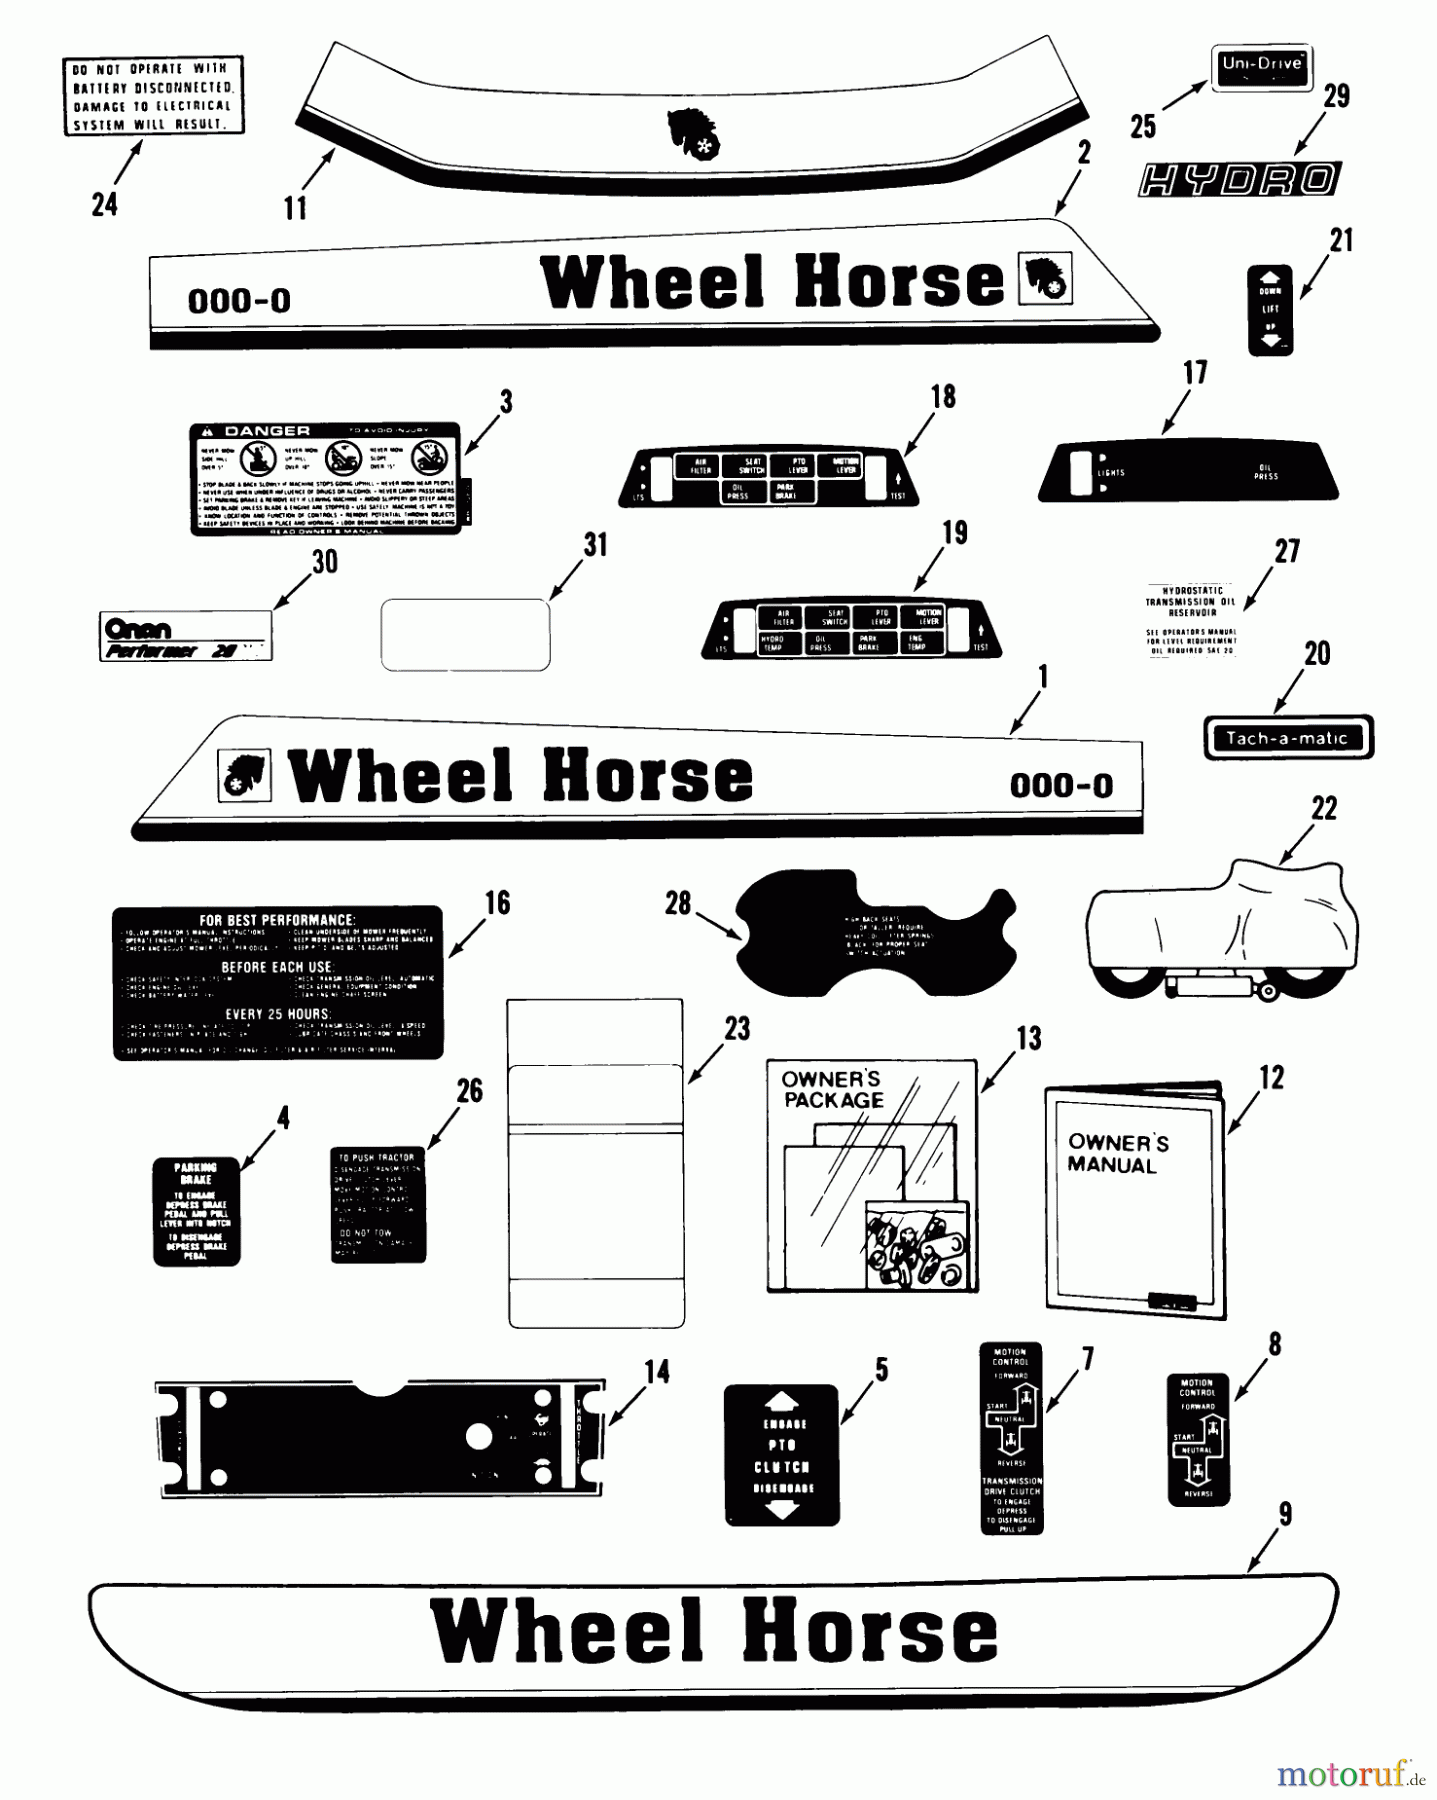  Toro Neu Mowers, Lawn & Garden Tractor Seite 1 31-16OE01 (516-H) - Toro 516-H Garden Tractor, 1988 DECALS